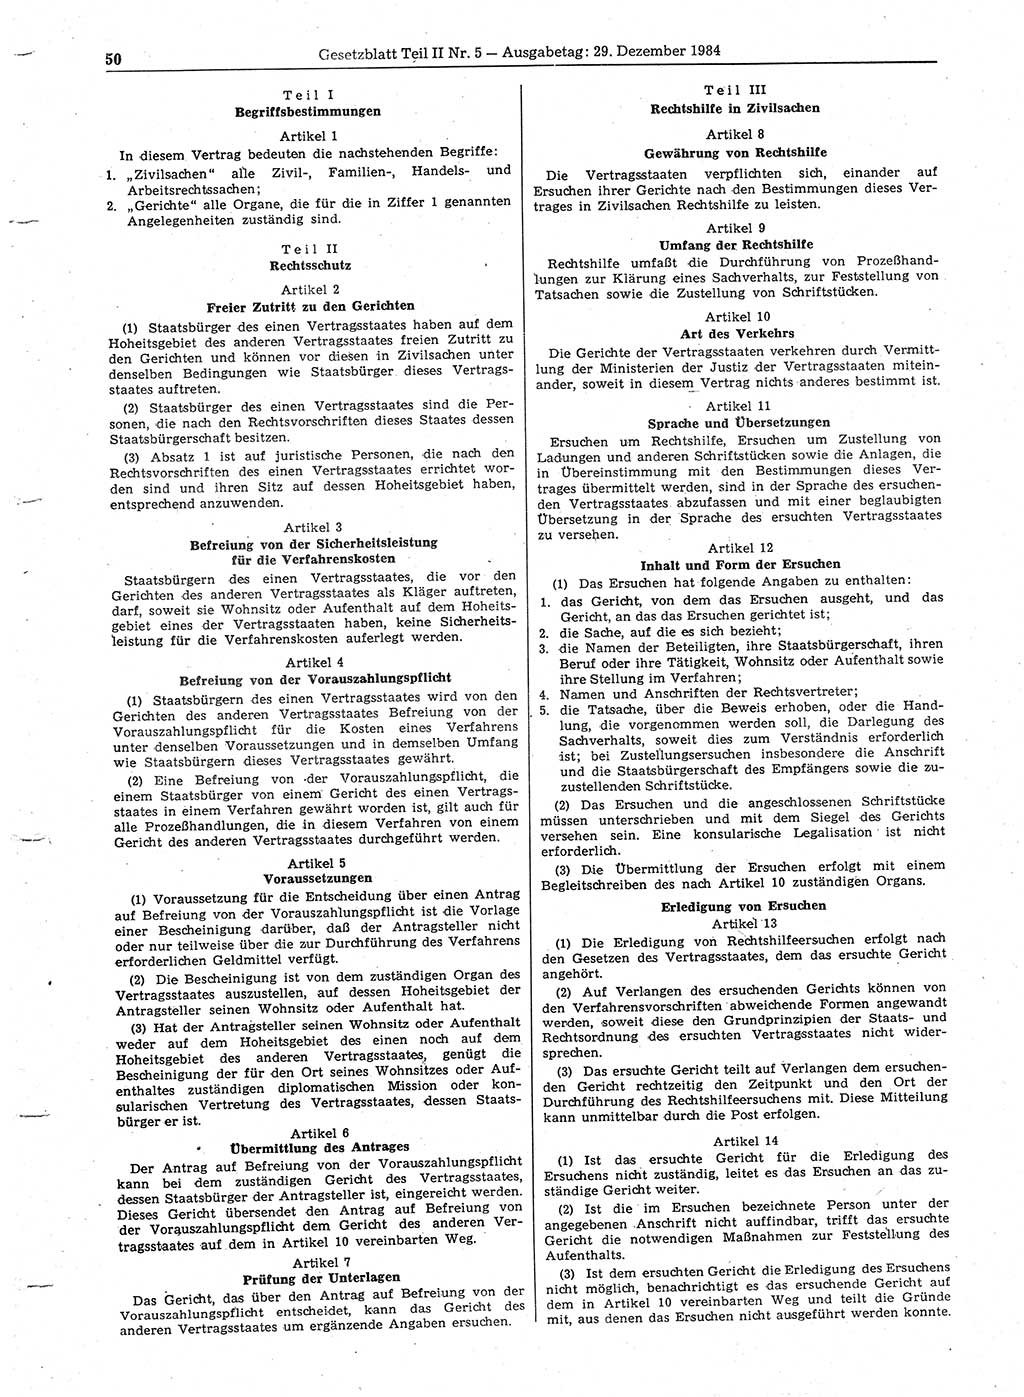 Gesetzblatt (GBl.) der Deutschen Demokratischen Republik (DDR) Teil ⅠⅠ 1984, Seite 50 (GBl. DDR ⅠⅠ 1984, S. 50)